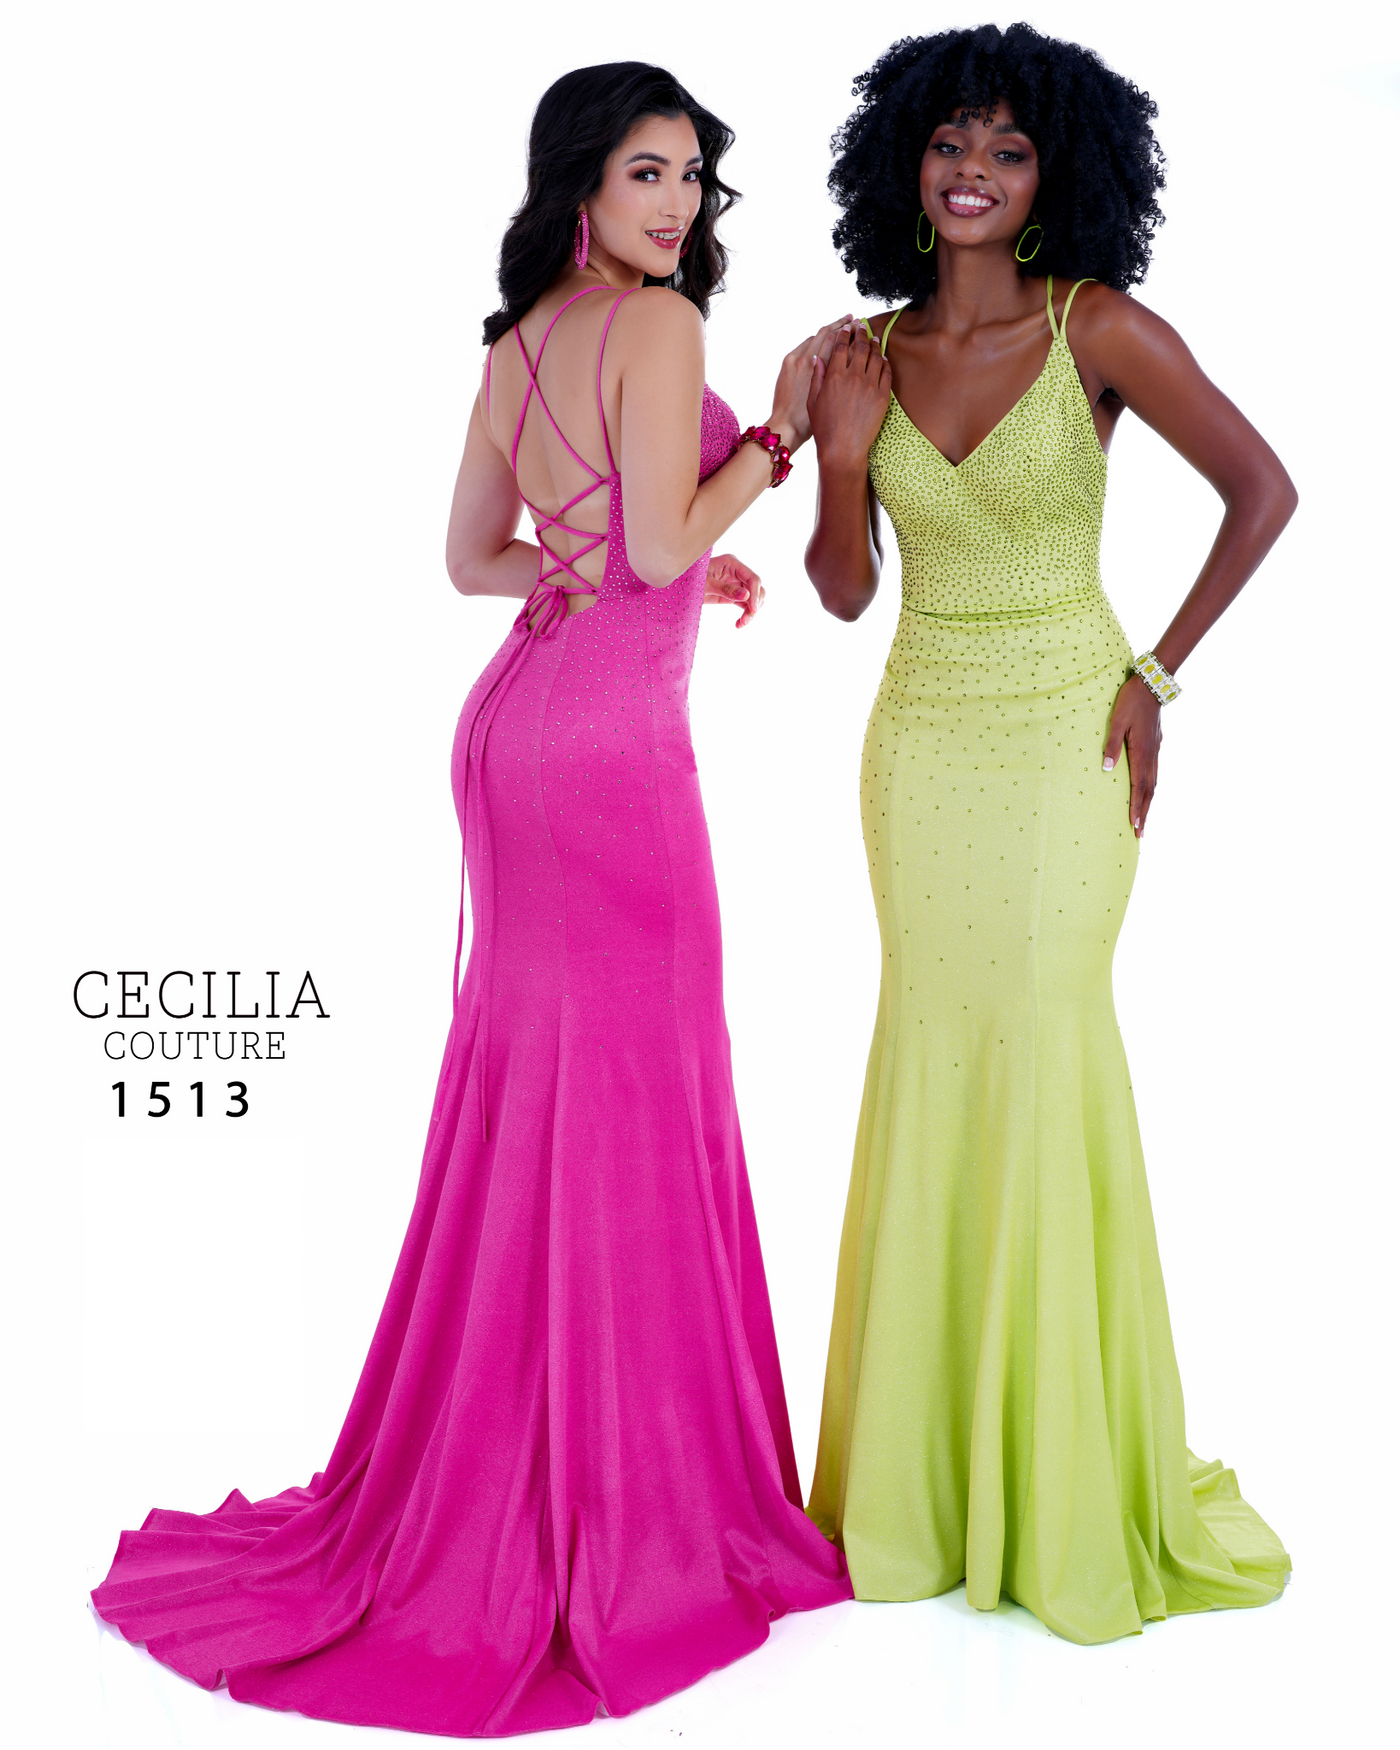 Cecilia Couture 1513 Apple Prom Dress